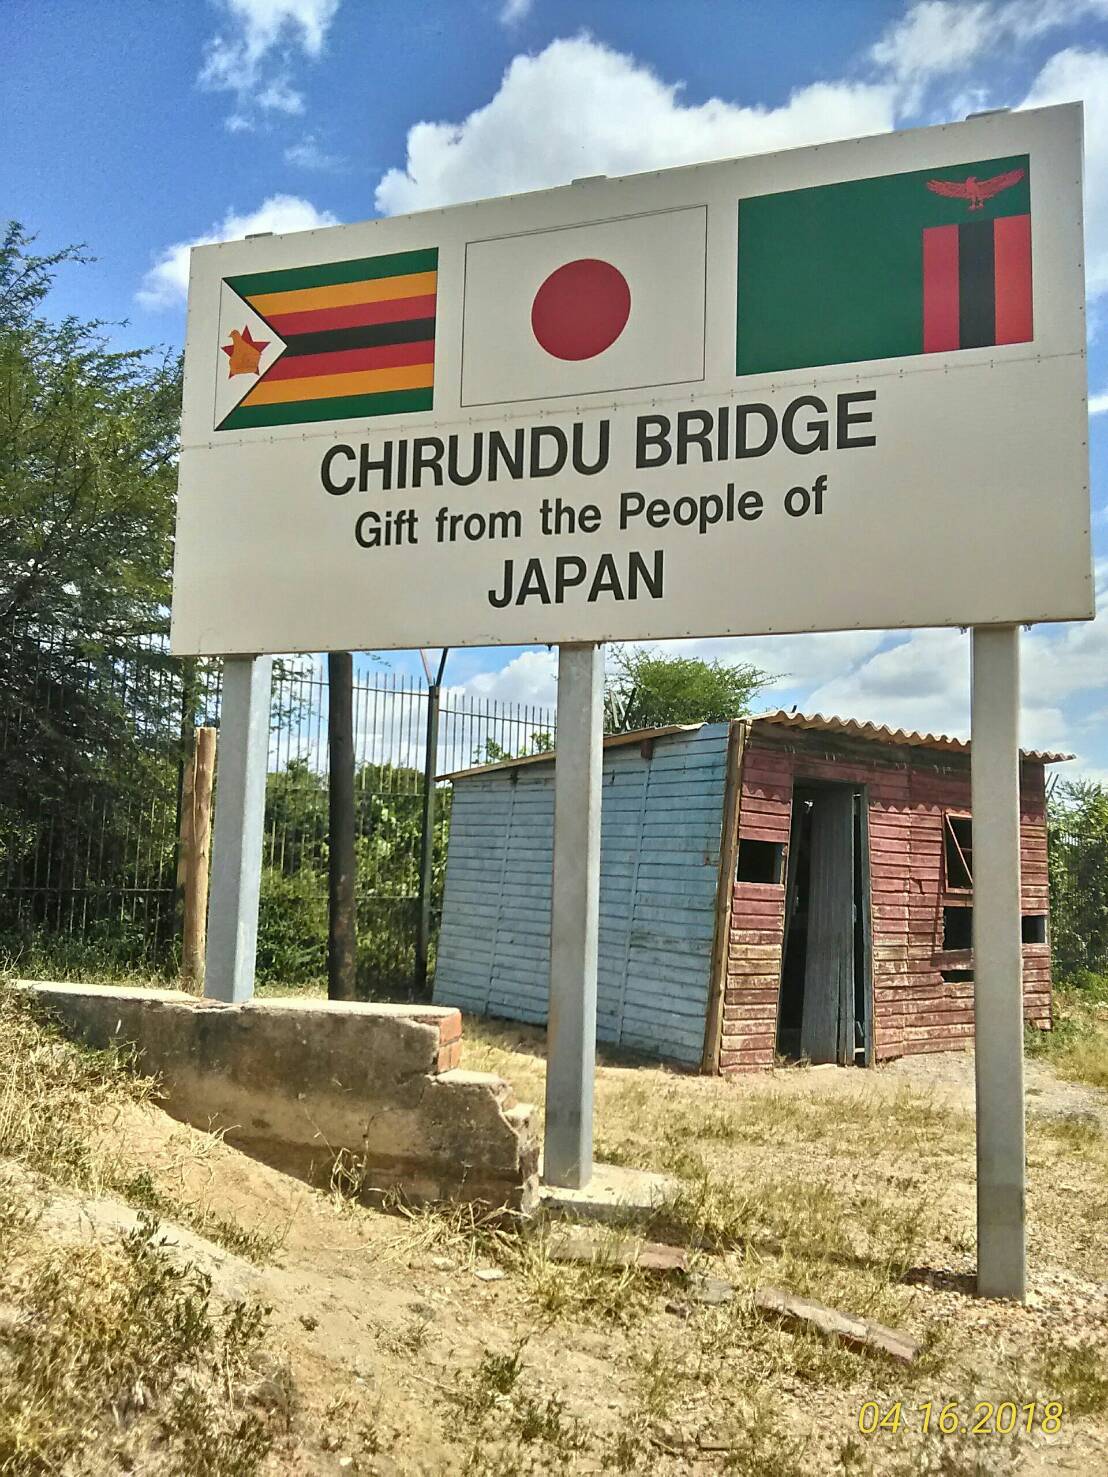 ザンビア国境.JPG